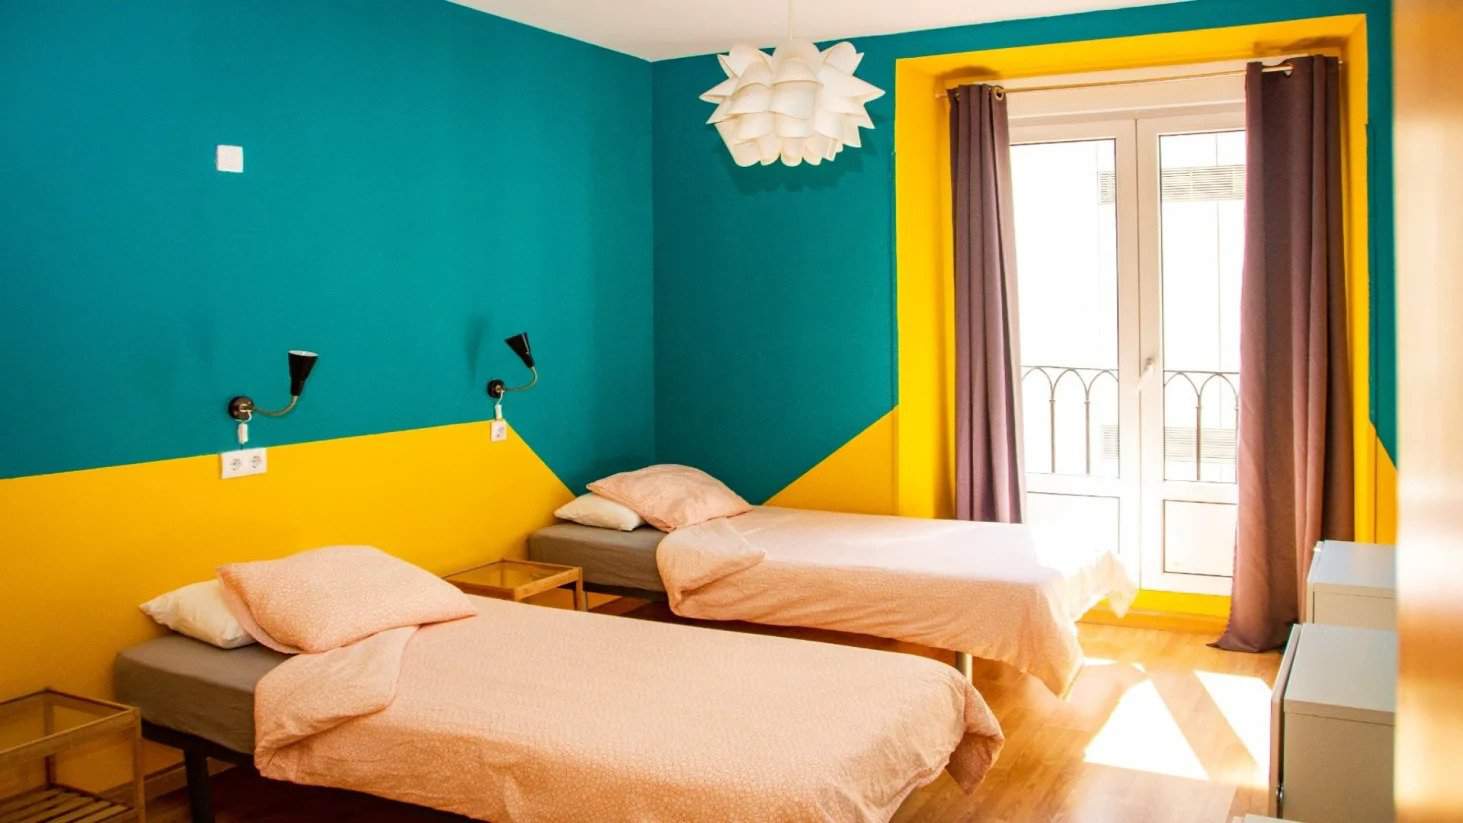 Duas camas de solteiro em um quarto colorido no Sungate One Hostel em Madrid, Espanha.